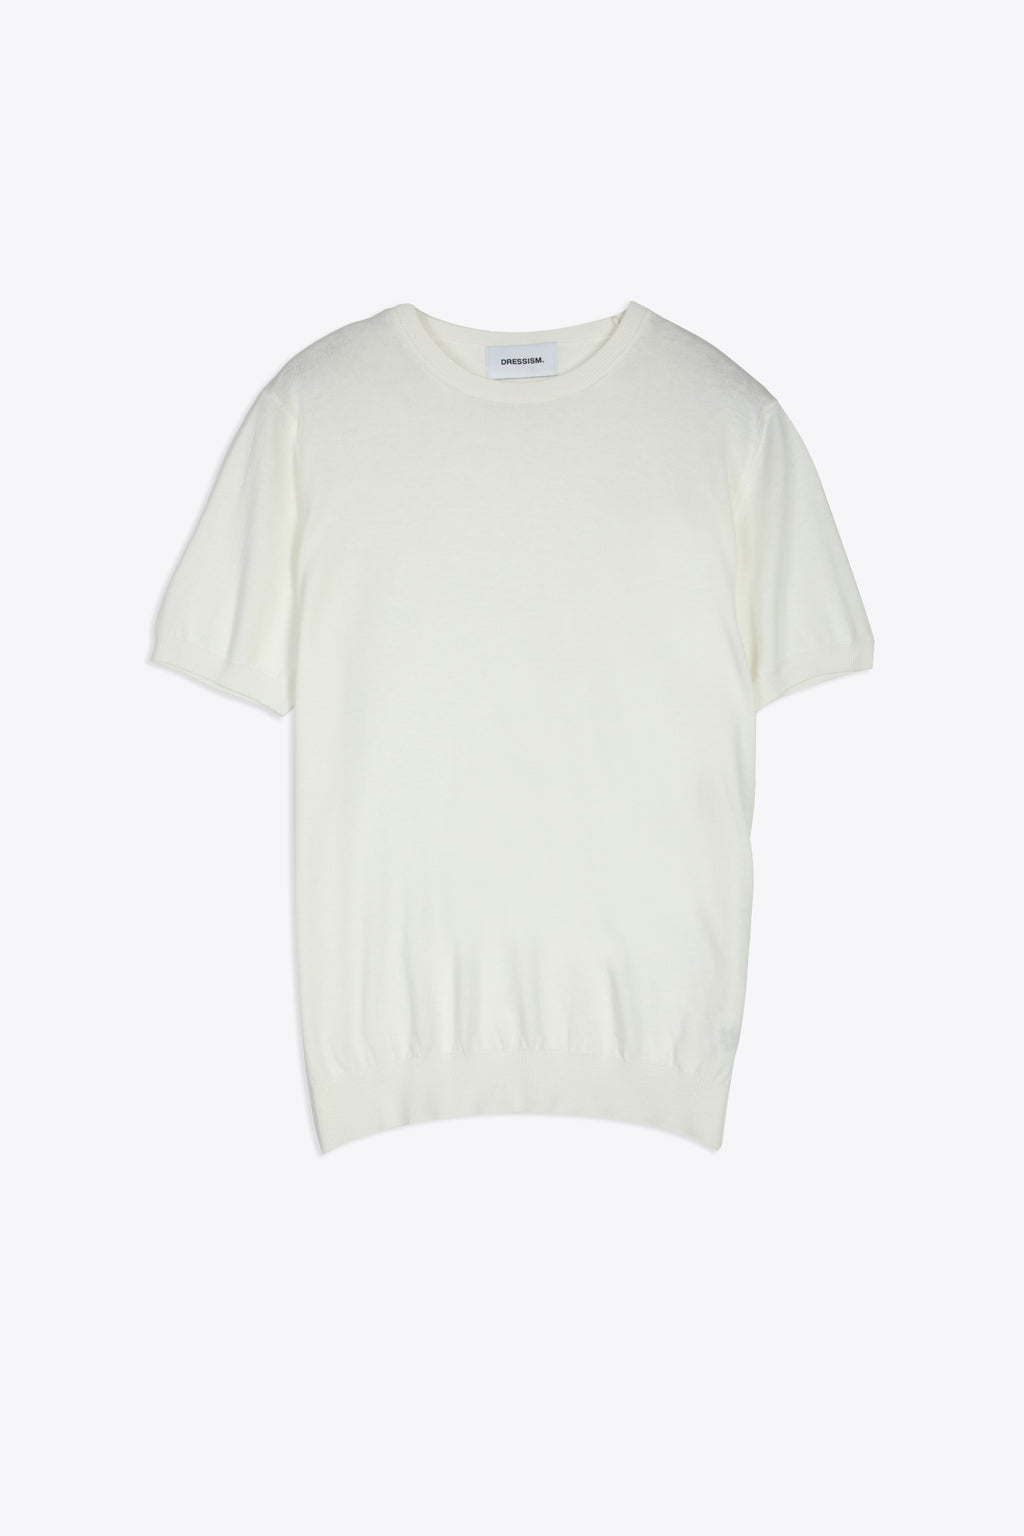 alt-image__White-cotton-knit-t-shirt